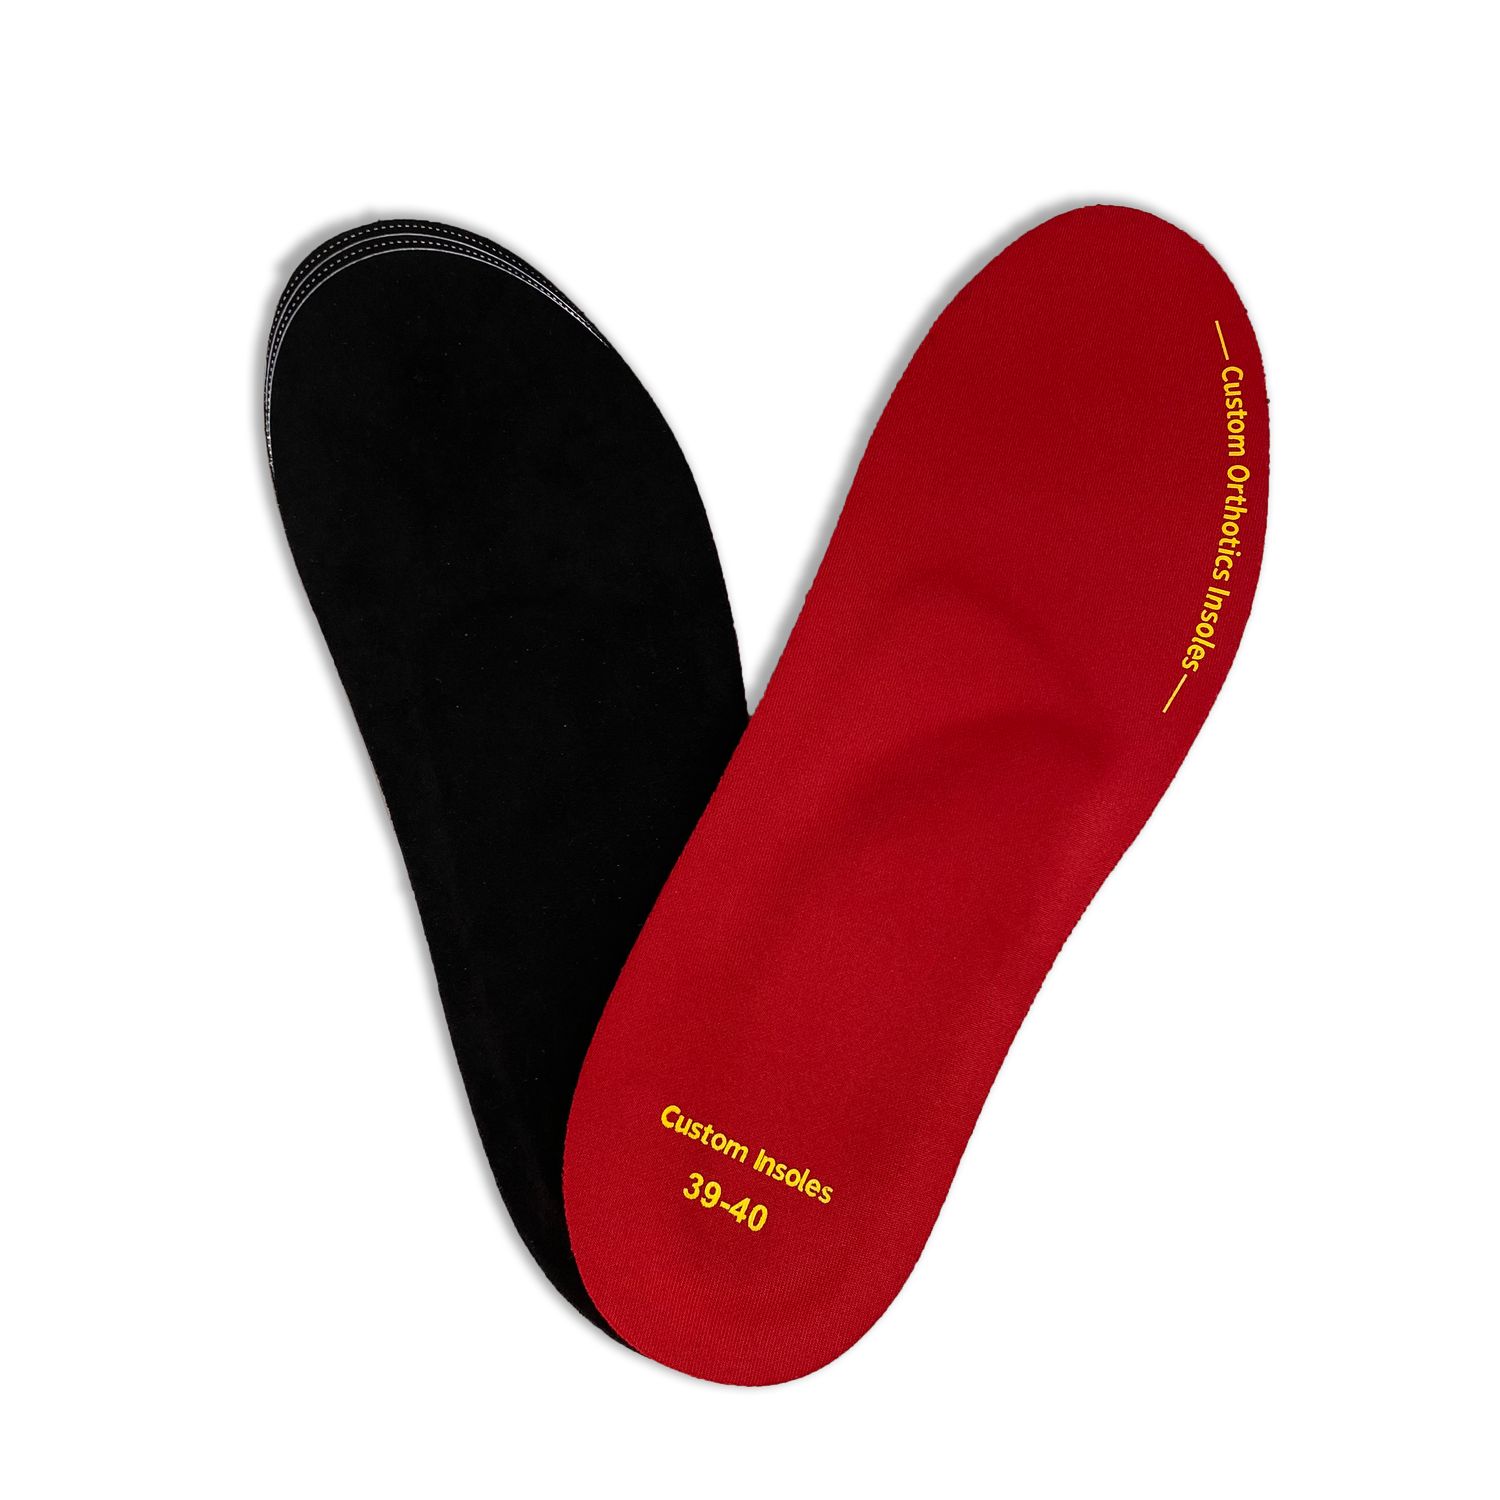 Lee-Mat custom heat moldable shoe inserts